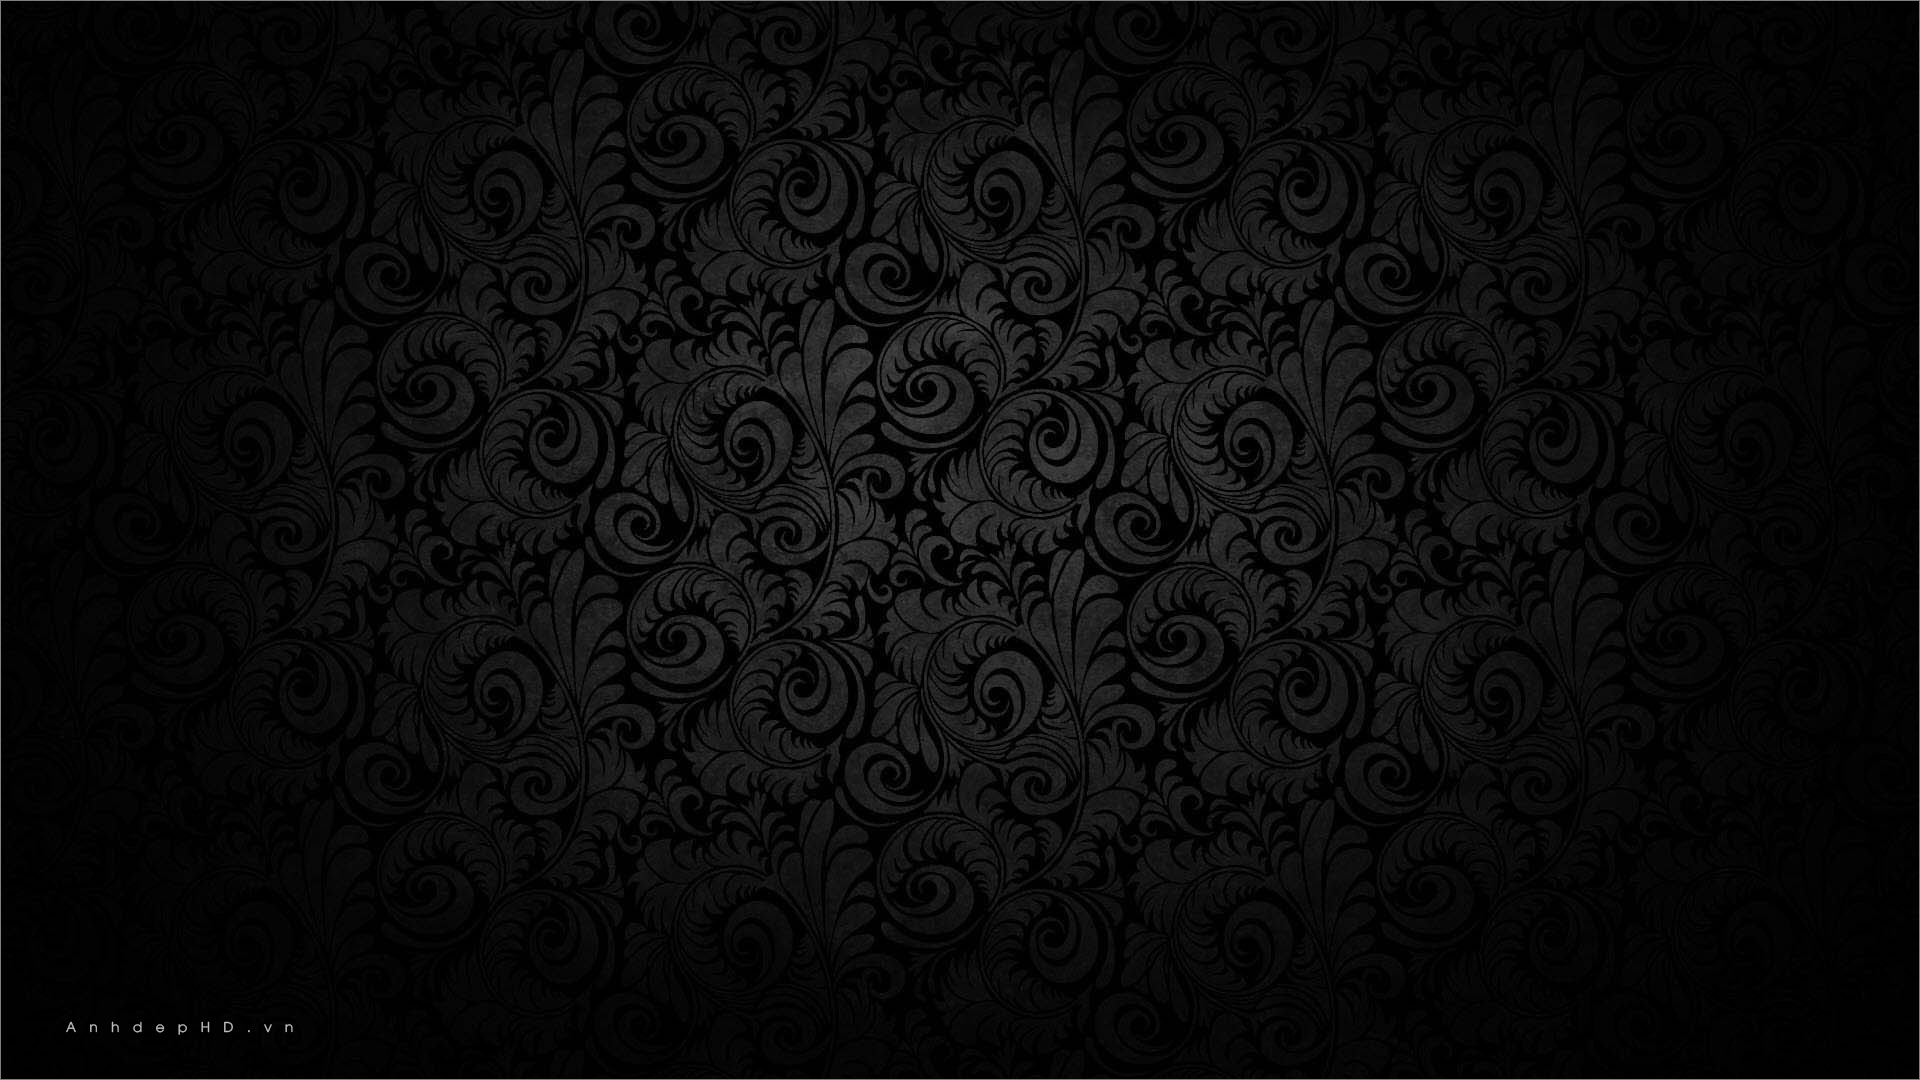 Background Black: Tận hưởng không gian desktop đẹp mắt với nền đen cực kỳ lịch lãm và tinh tế. Để khám phá thêm những hình ảnh tuyệt đẹp, hãy nhấn để xem ngay.